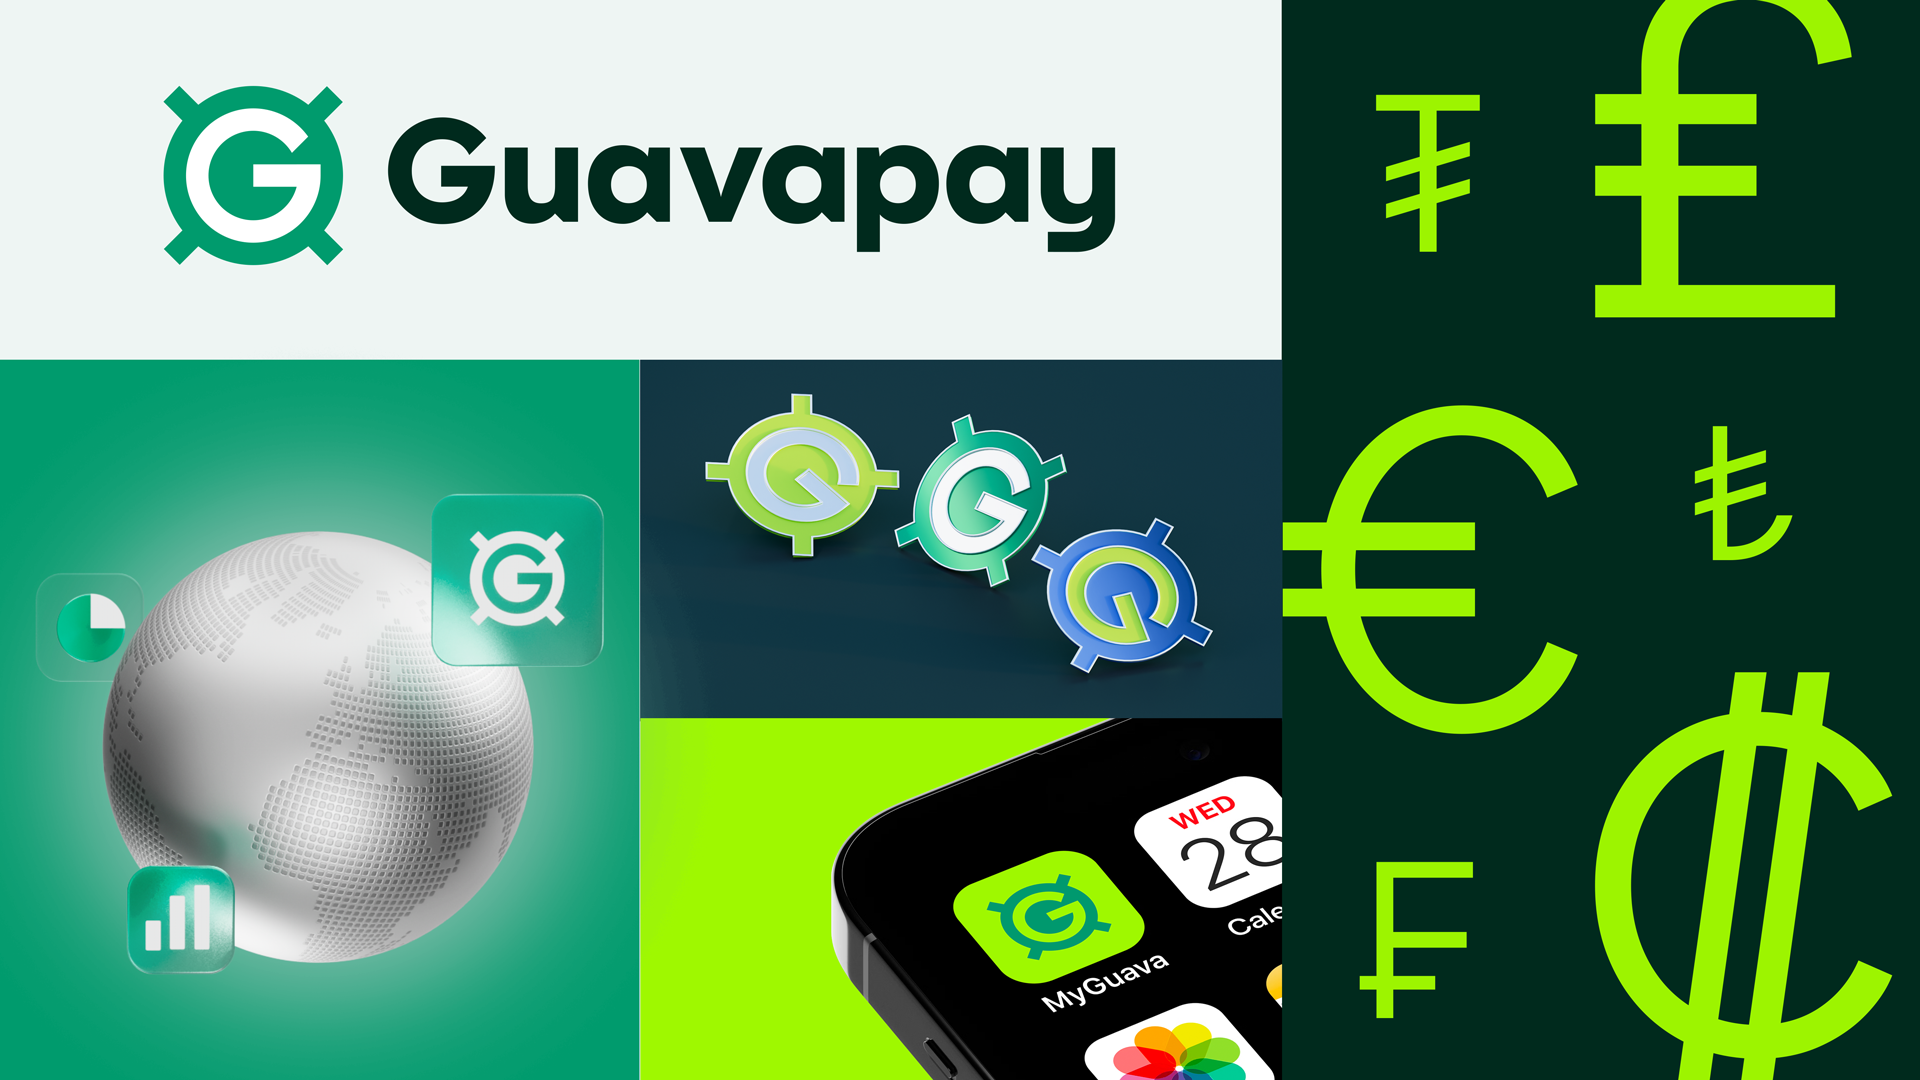 Guavapay rebranding